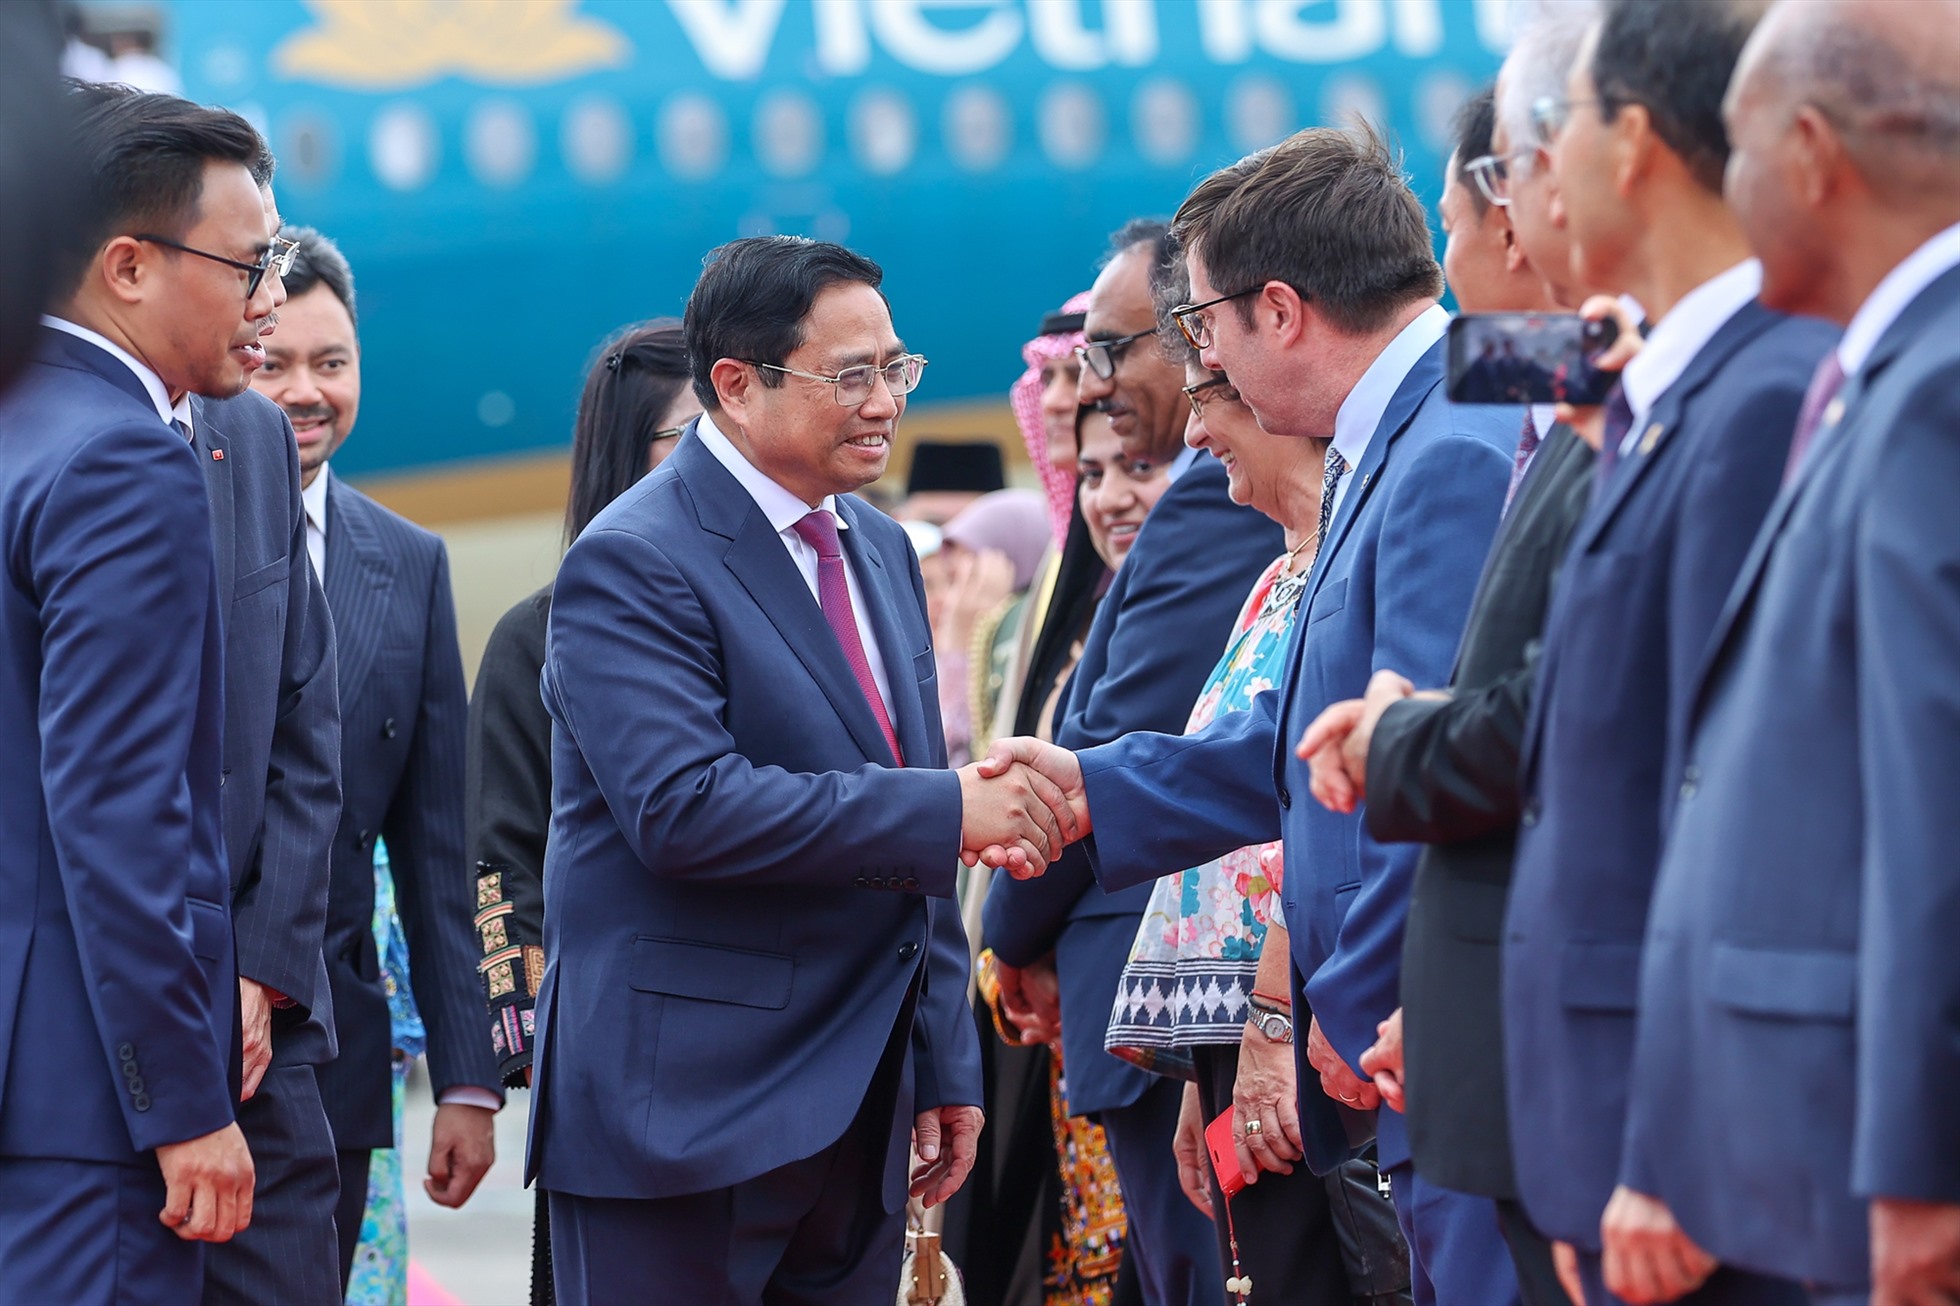 Ra đón Thủ tướng Chính phủ Phạm Minh Chính và Phu nhân cùng Đoàn đại biểu cấp cao Việt Nam có tất cả đại sứ, đại biện của các cơ quan đại diện ngoại giao nước ngoài tại Brunei - Ảnh: VGP/Nhật Bắc